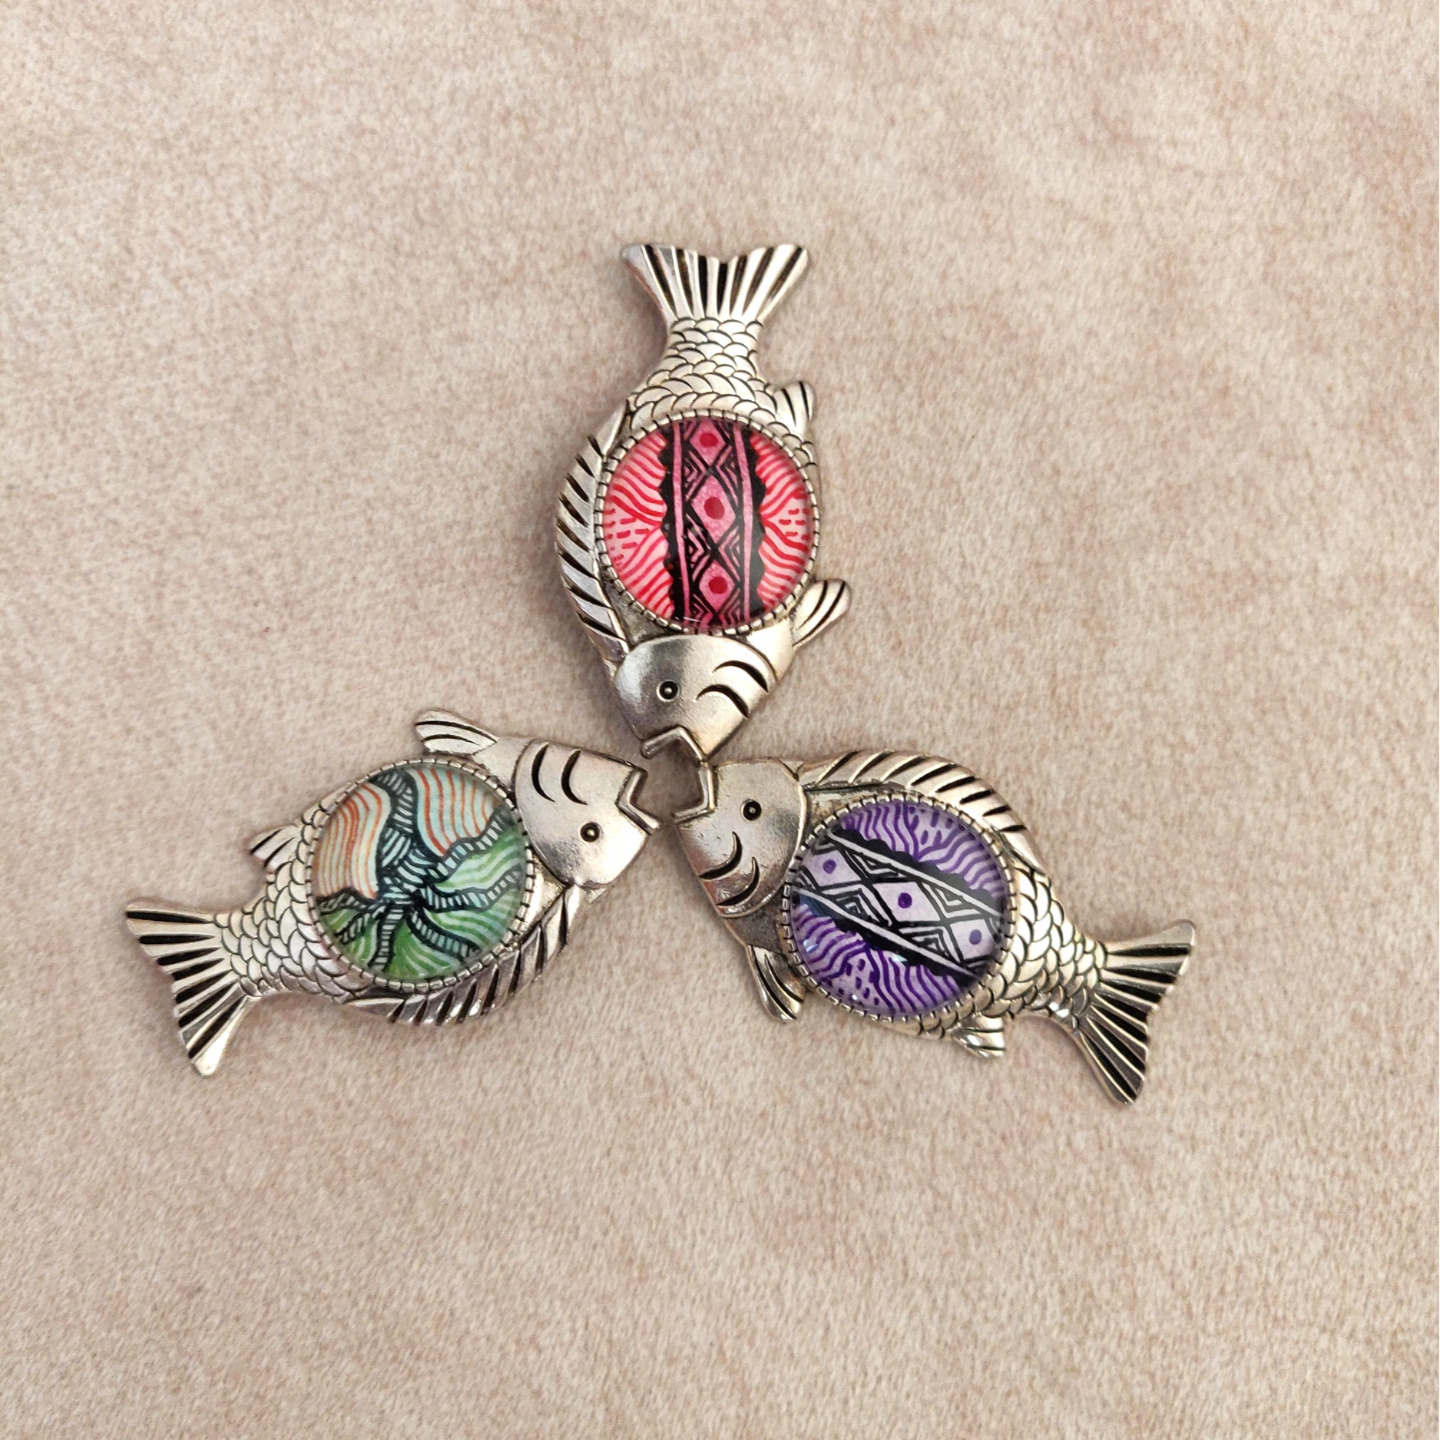 Madhubani Fish- Hand-painted Brooch Pin